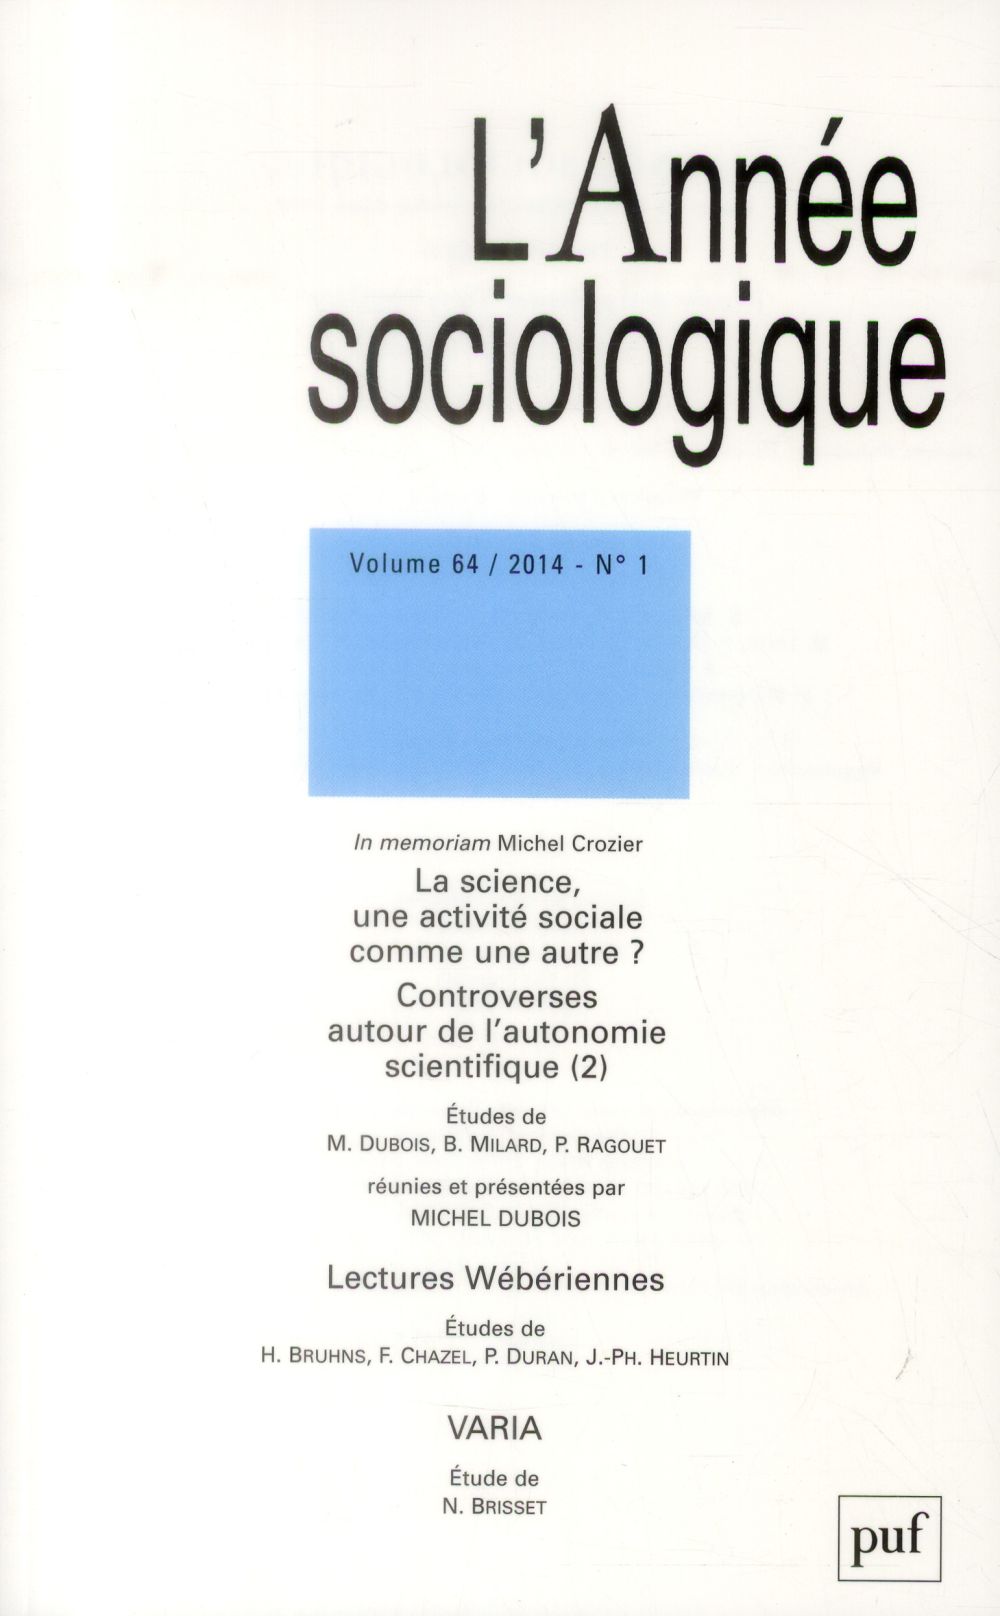 ANNEE SOCIOLOGIQUE 2014, VOL. 64 (1) - LA SCIENCE, UNE ACTIVITE SOCIALE COMME UNE AUTRE ? CONTROVERS